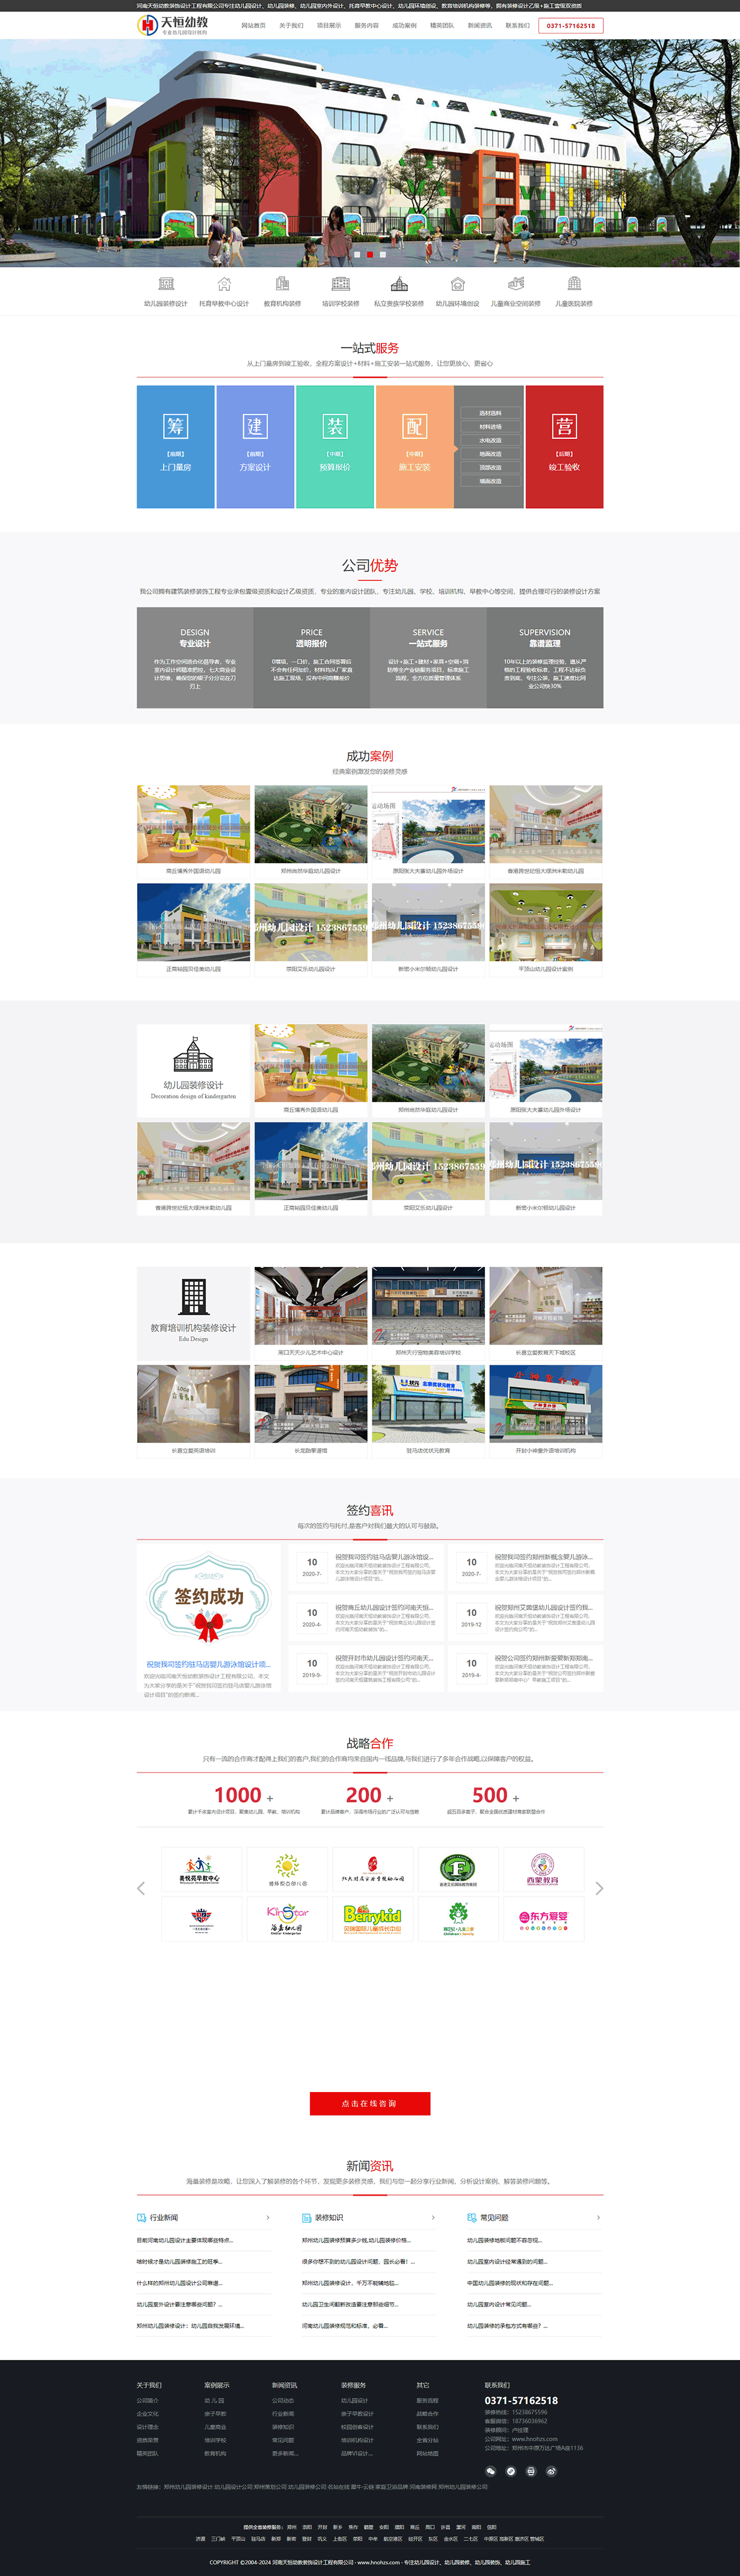 河南天恒幼教装饰设计工程有限公司品牌网站建设案例